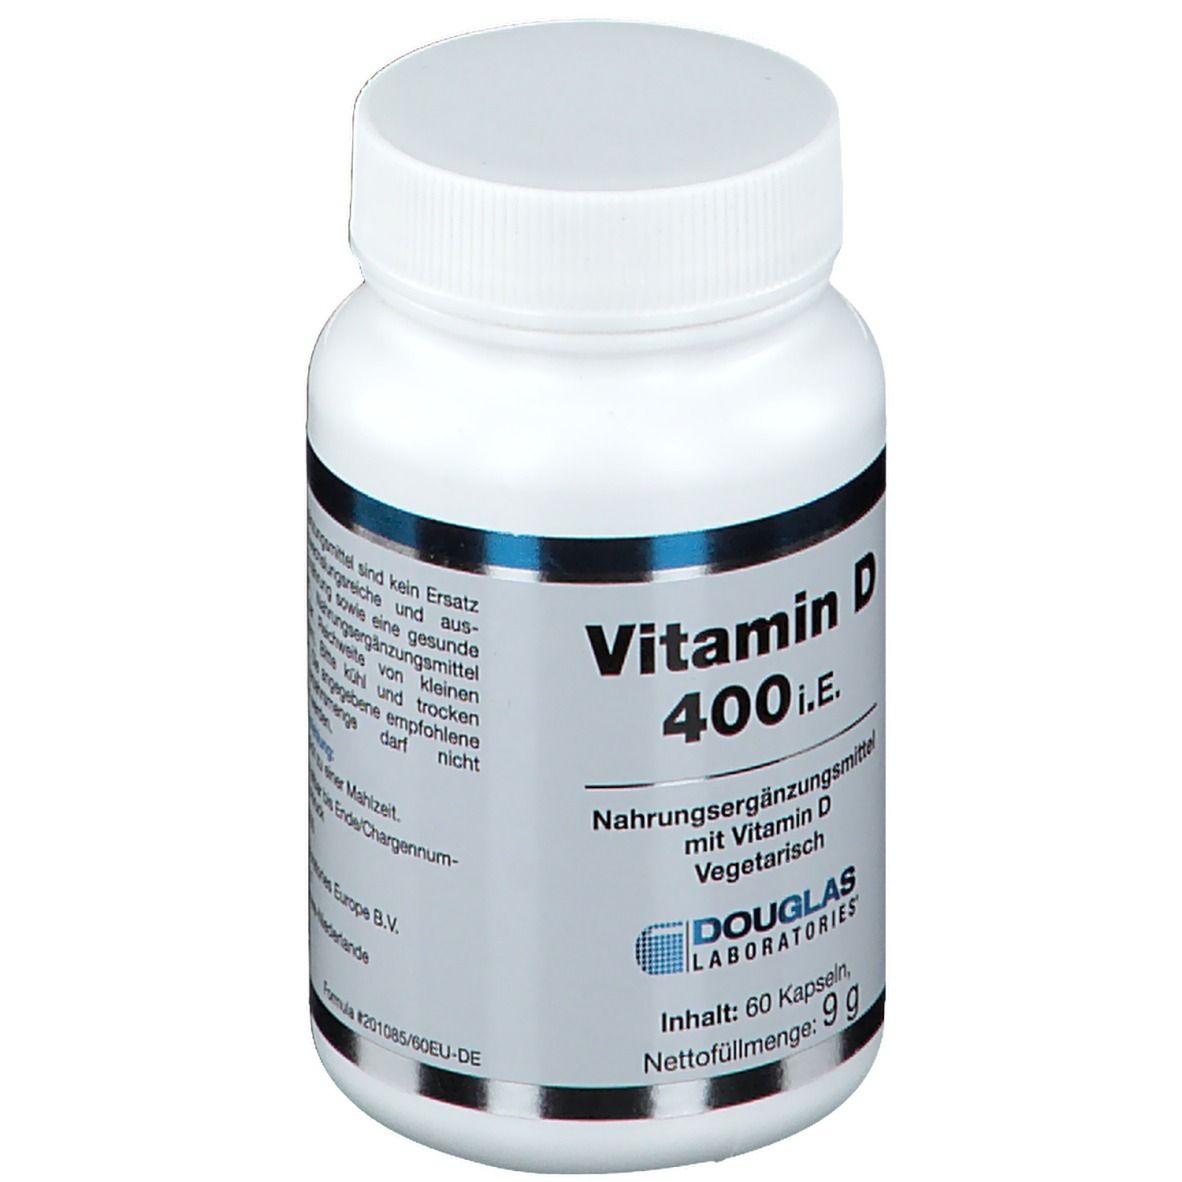 Vitamin D 400 I.E.